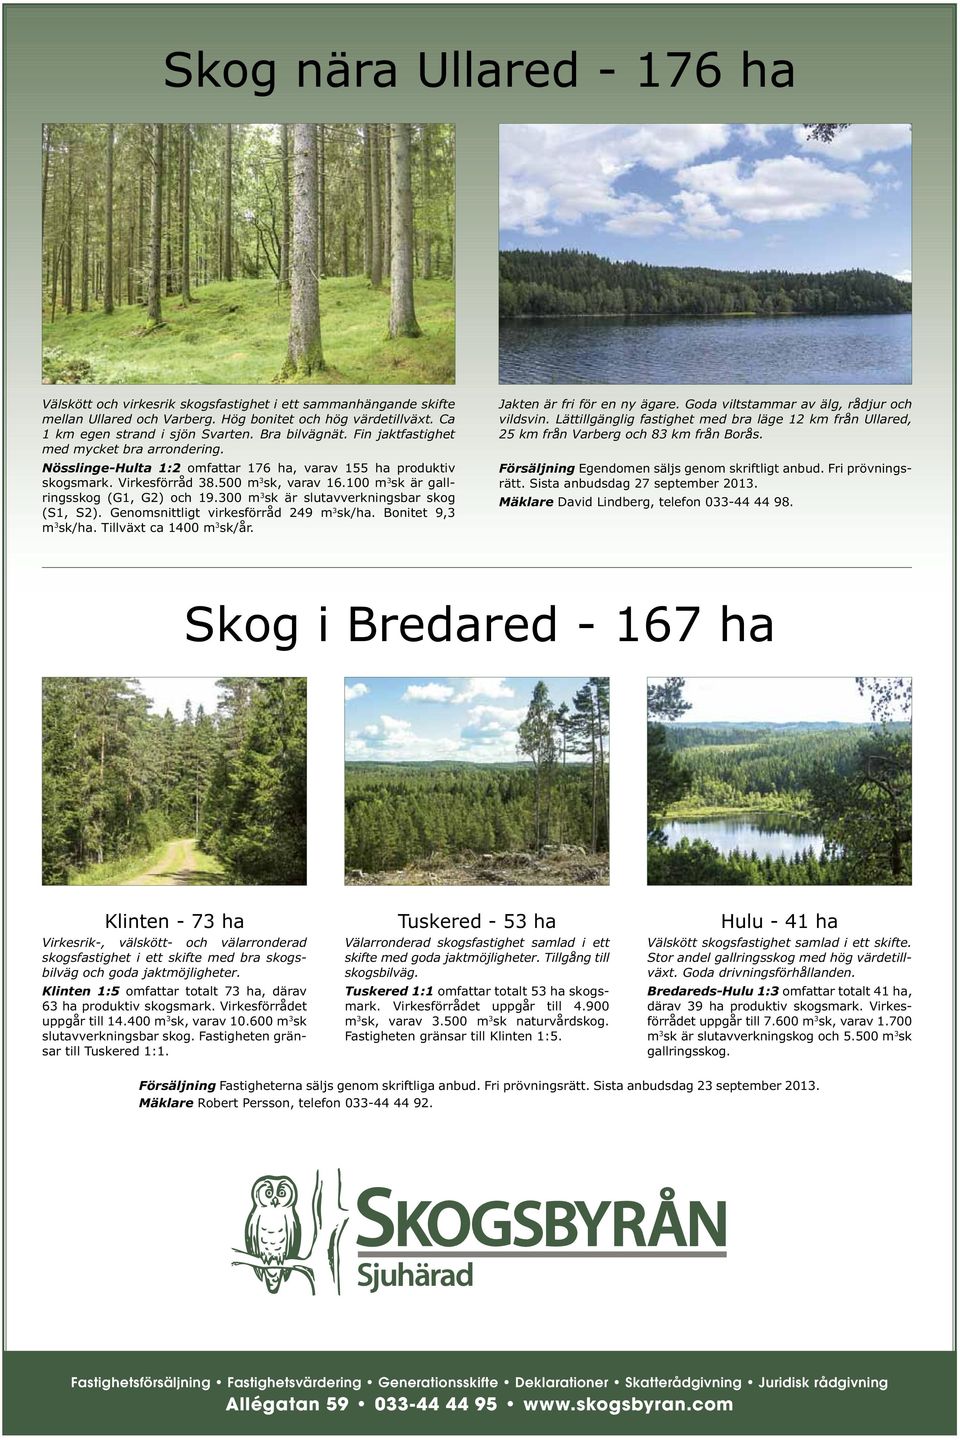 100 m 3 sk är gallringsskog (G1, G2) och 19.300 m 3 sk är slutavverkningsbar skog (S1, S2). Genomsnittligt virkesförråd 249 m 3 sk/ha. Bonitet 9,3 m 3 sk/ha. Tillväxt ca 1400 m 3 sk/år.